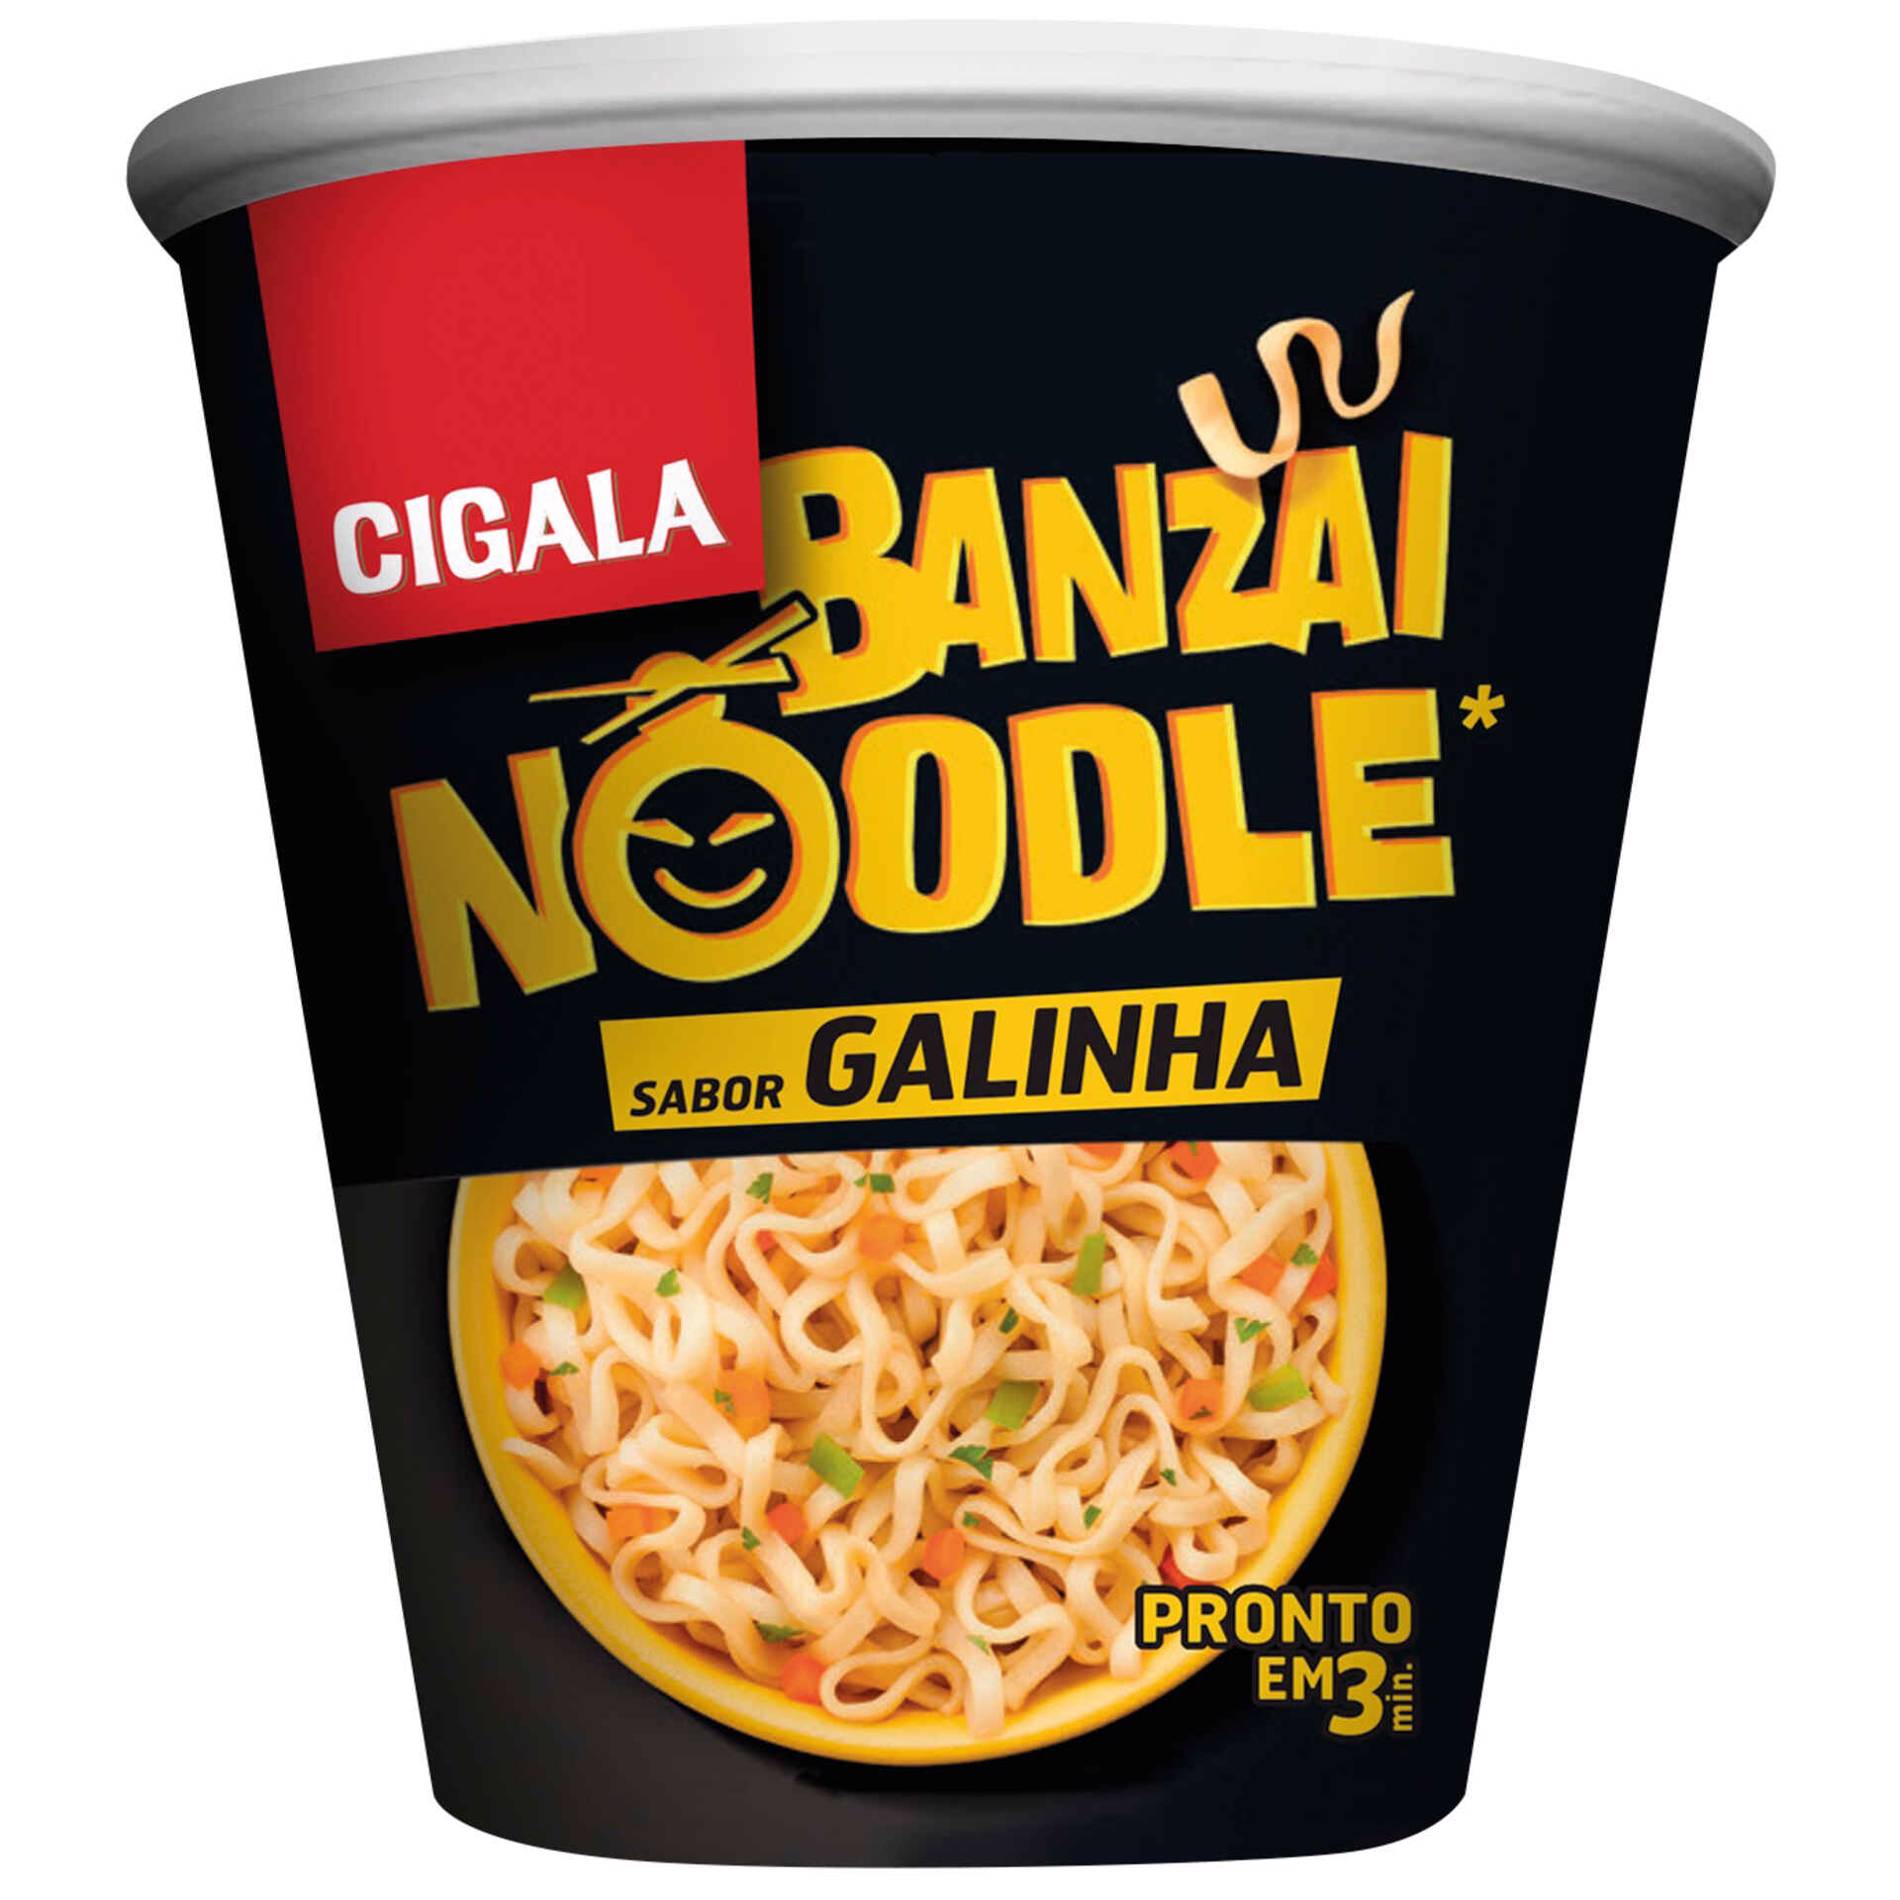 Cigala Banzai Noodle Carne 67 gr - Pack 4 x 67 gr